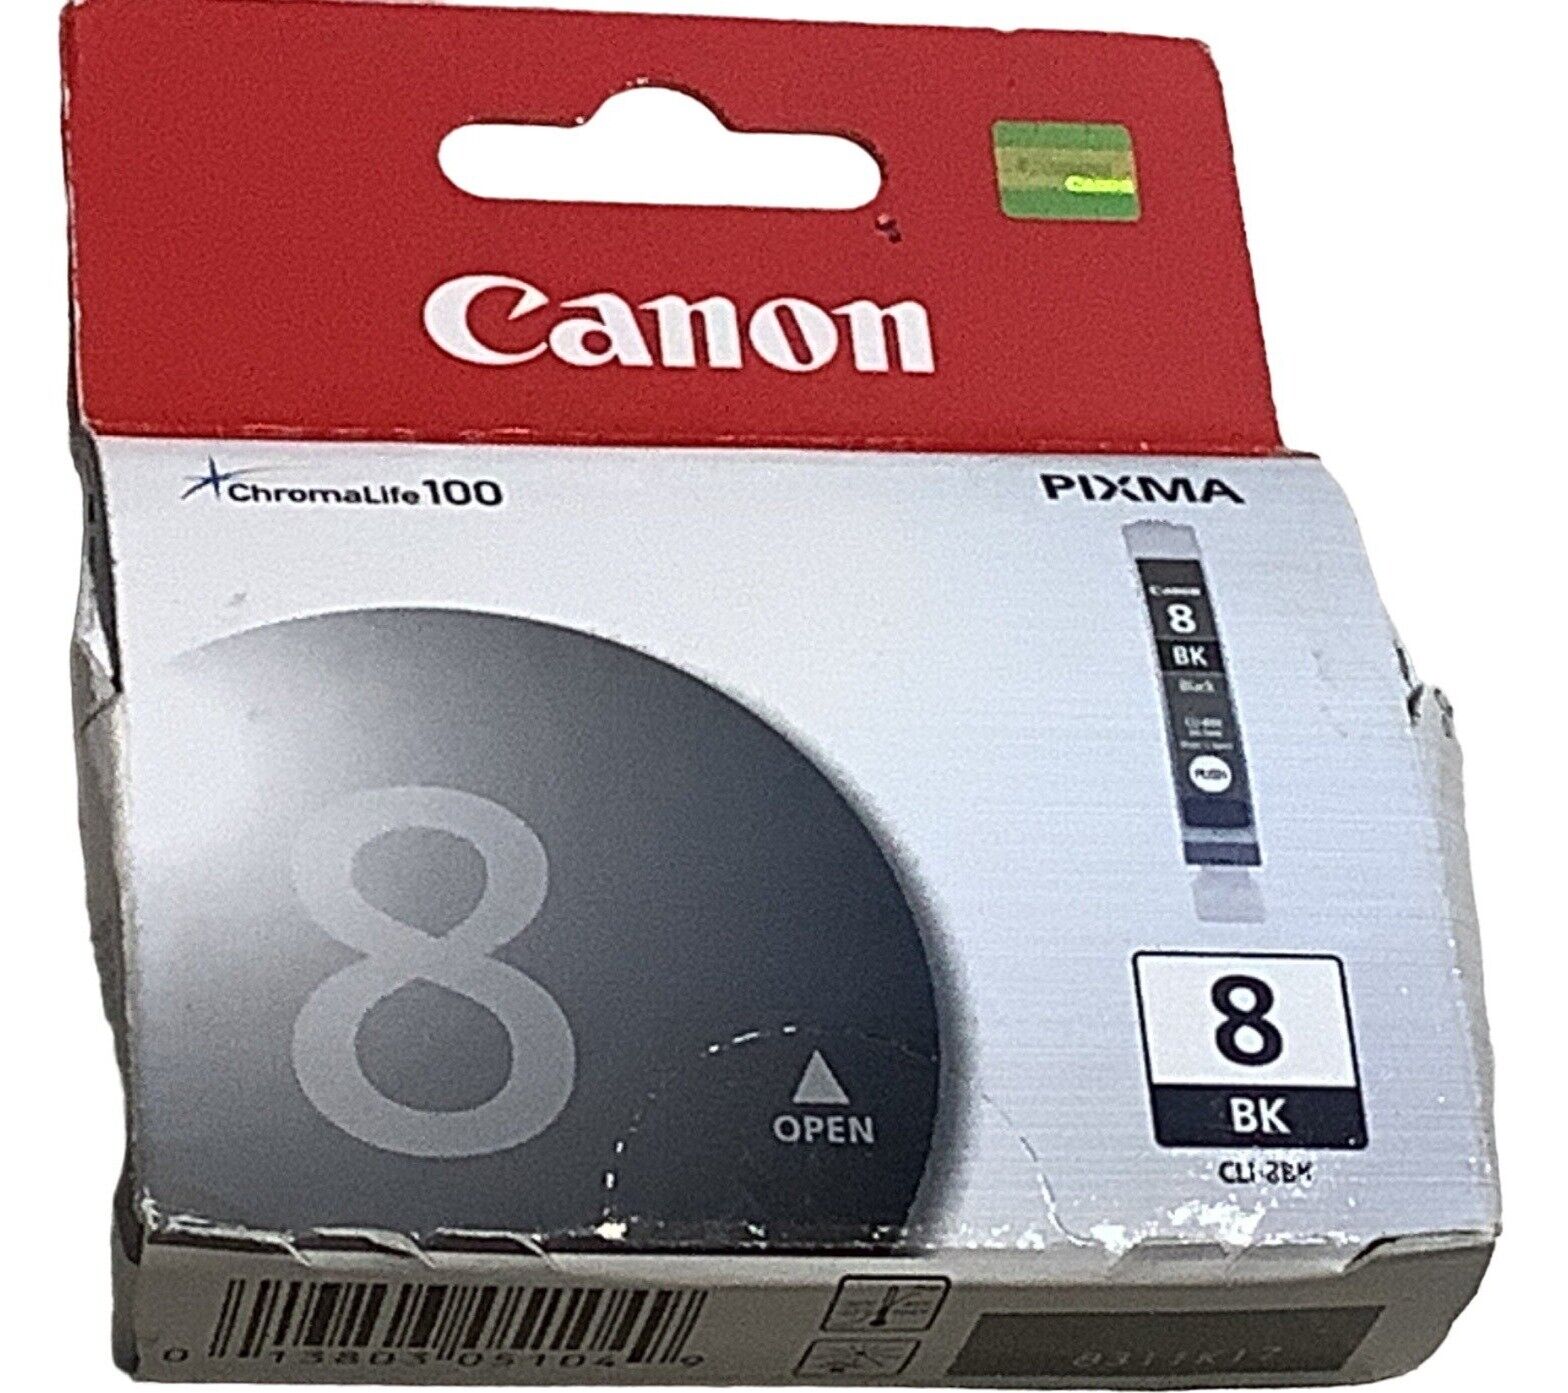 Canon CLI-8BK Black Ink Cartridge ChromaLife 100 Sealed